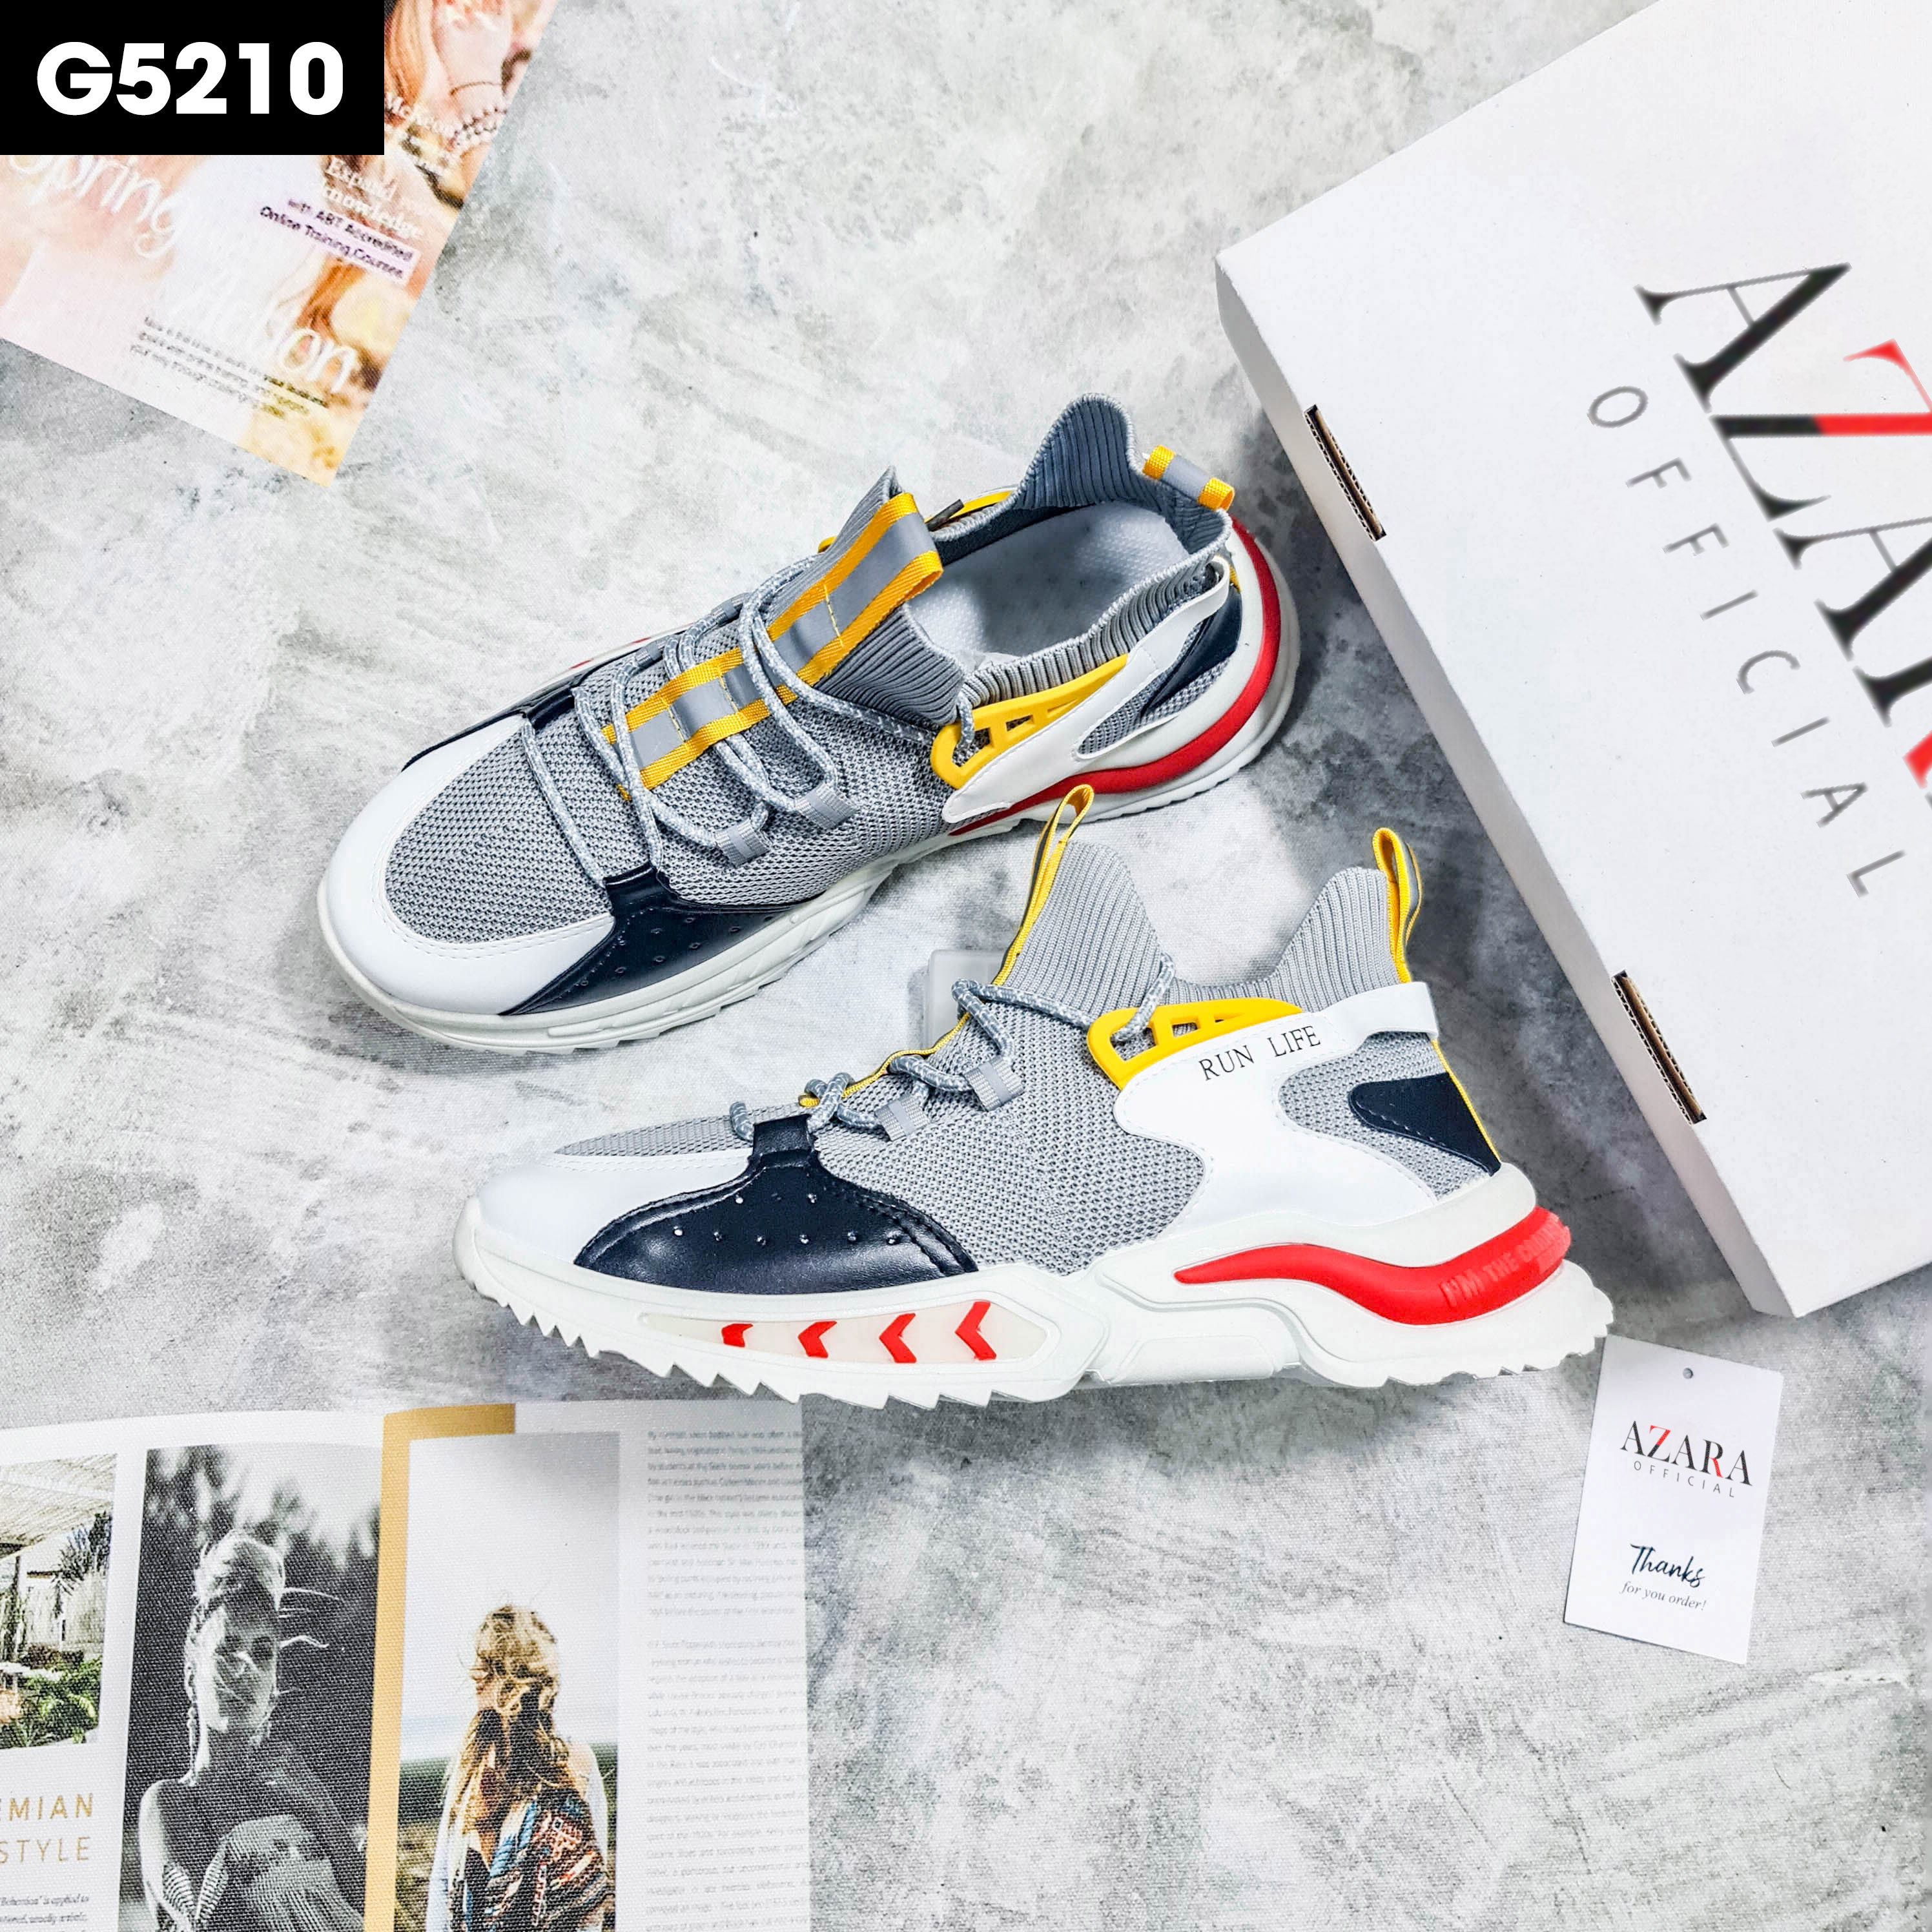 Giày Thể Thao Nam AZARA - Sneaker Màu Xám - Trắng - Đen, Giày Thể Thao Chạy Bộ, Hoạ Tiết Dấu Phẩy Đơn Giản - G5210